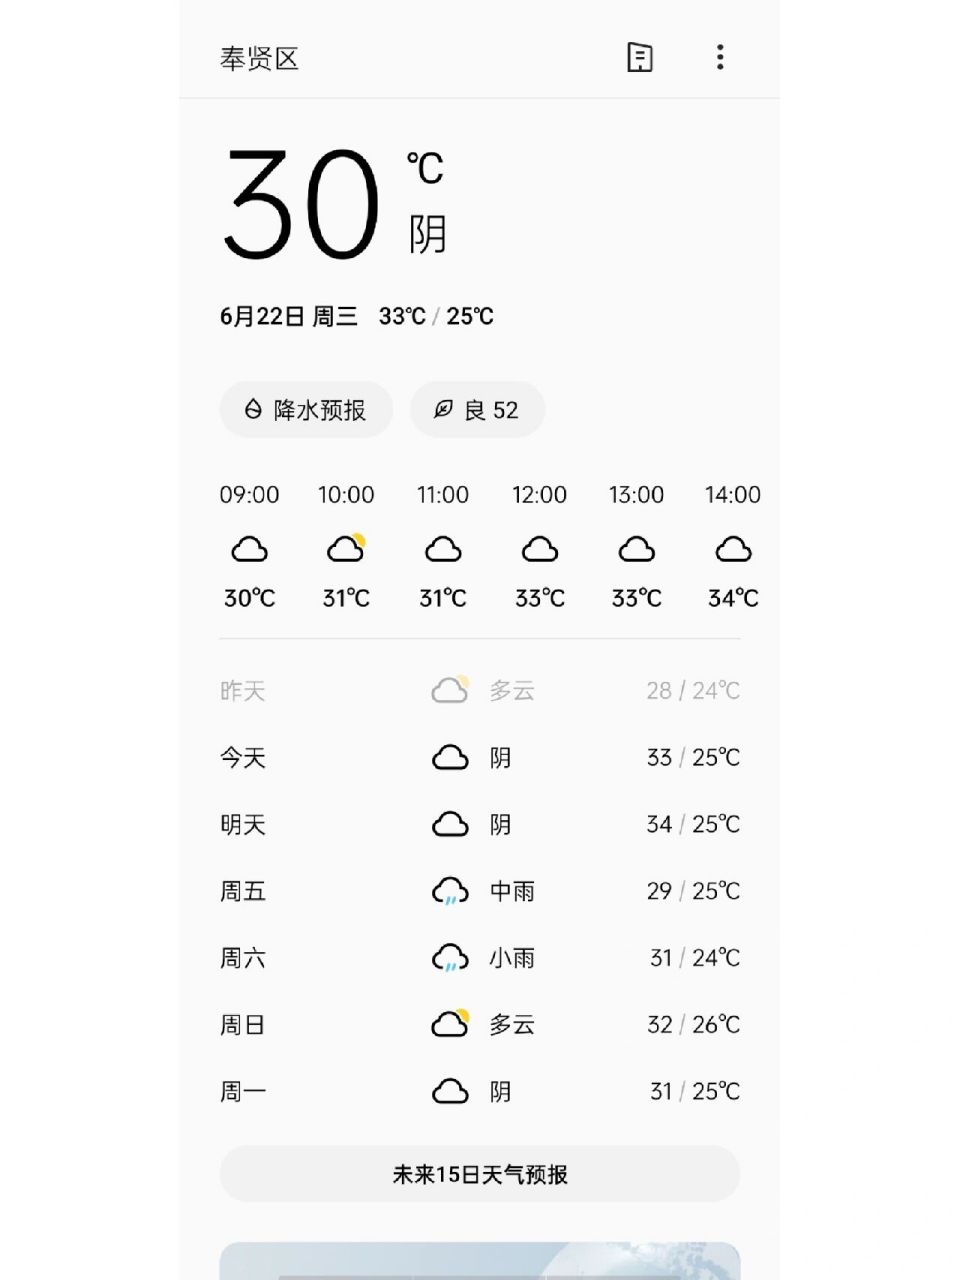 上海天气预报说明天会下雨真的好热 昨天天气预报还说显示未来四天